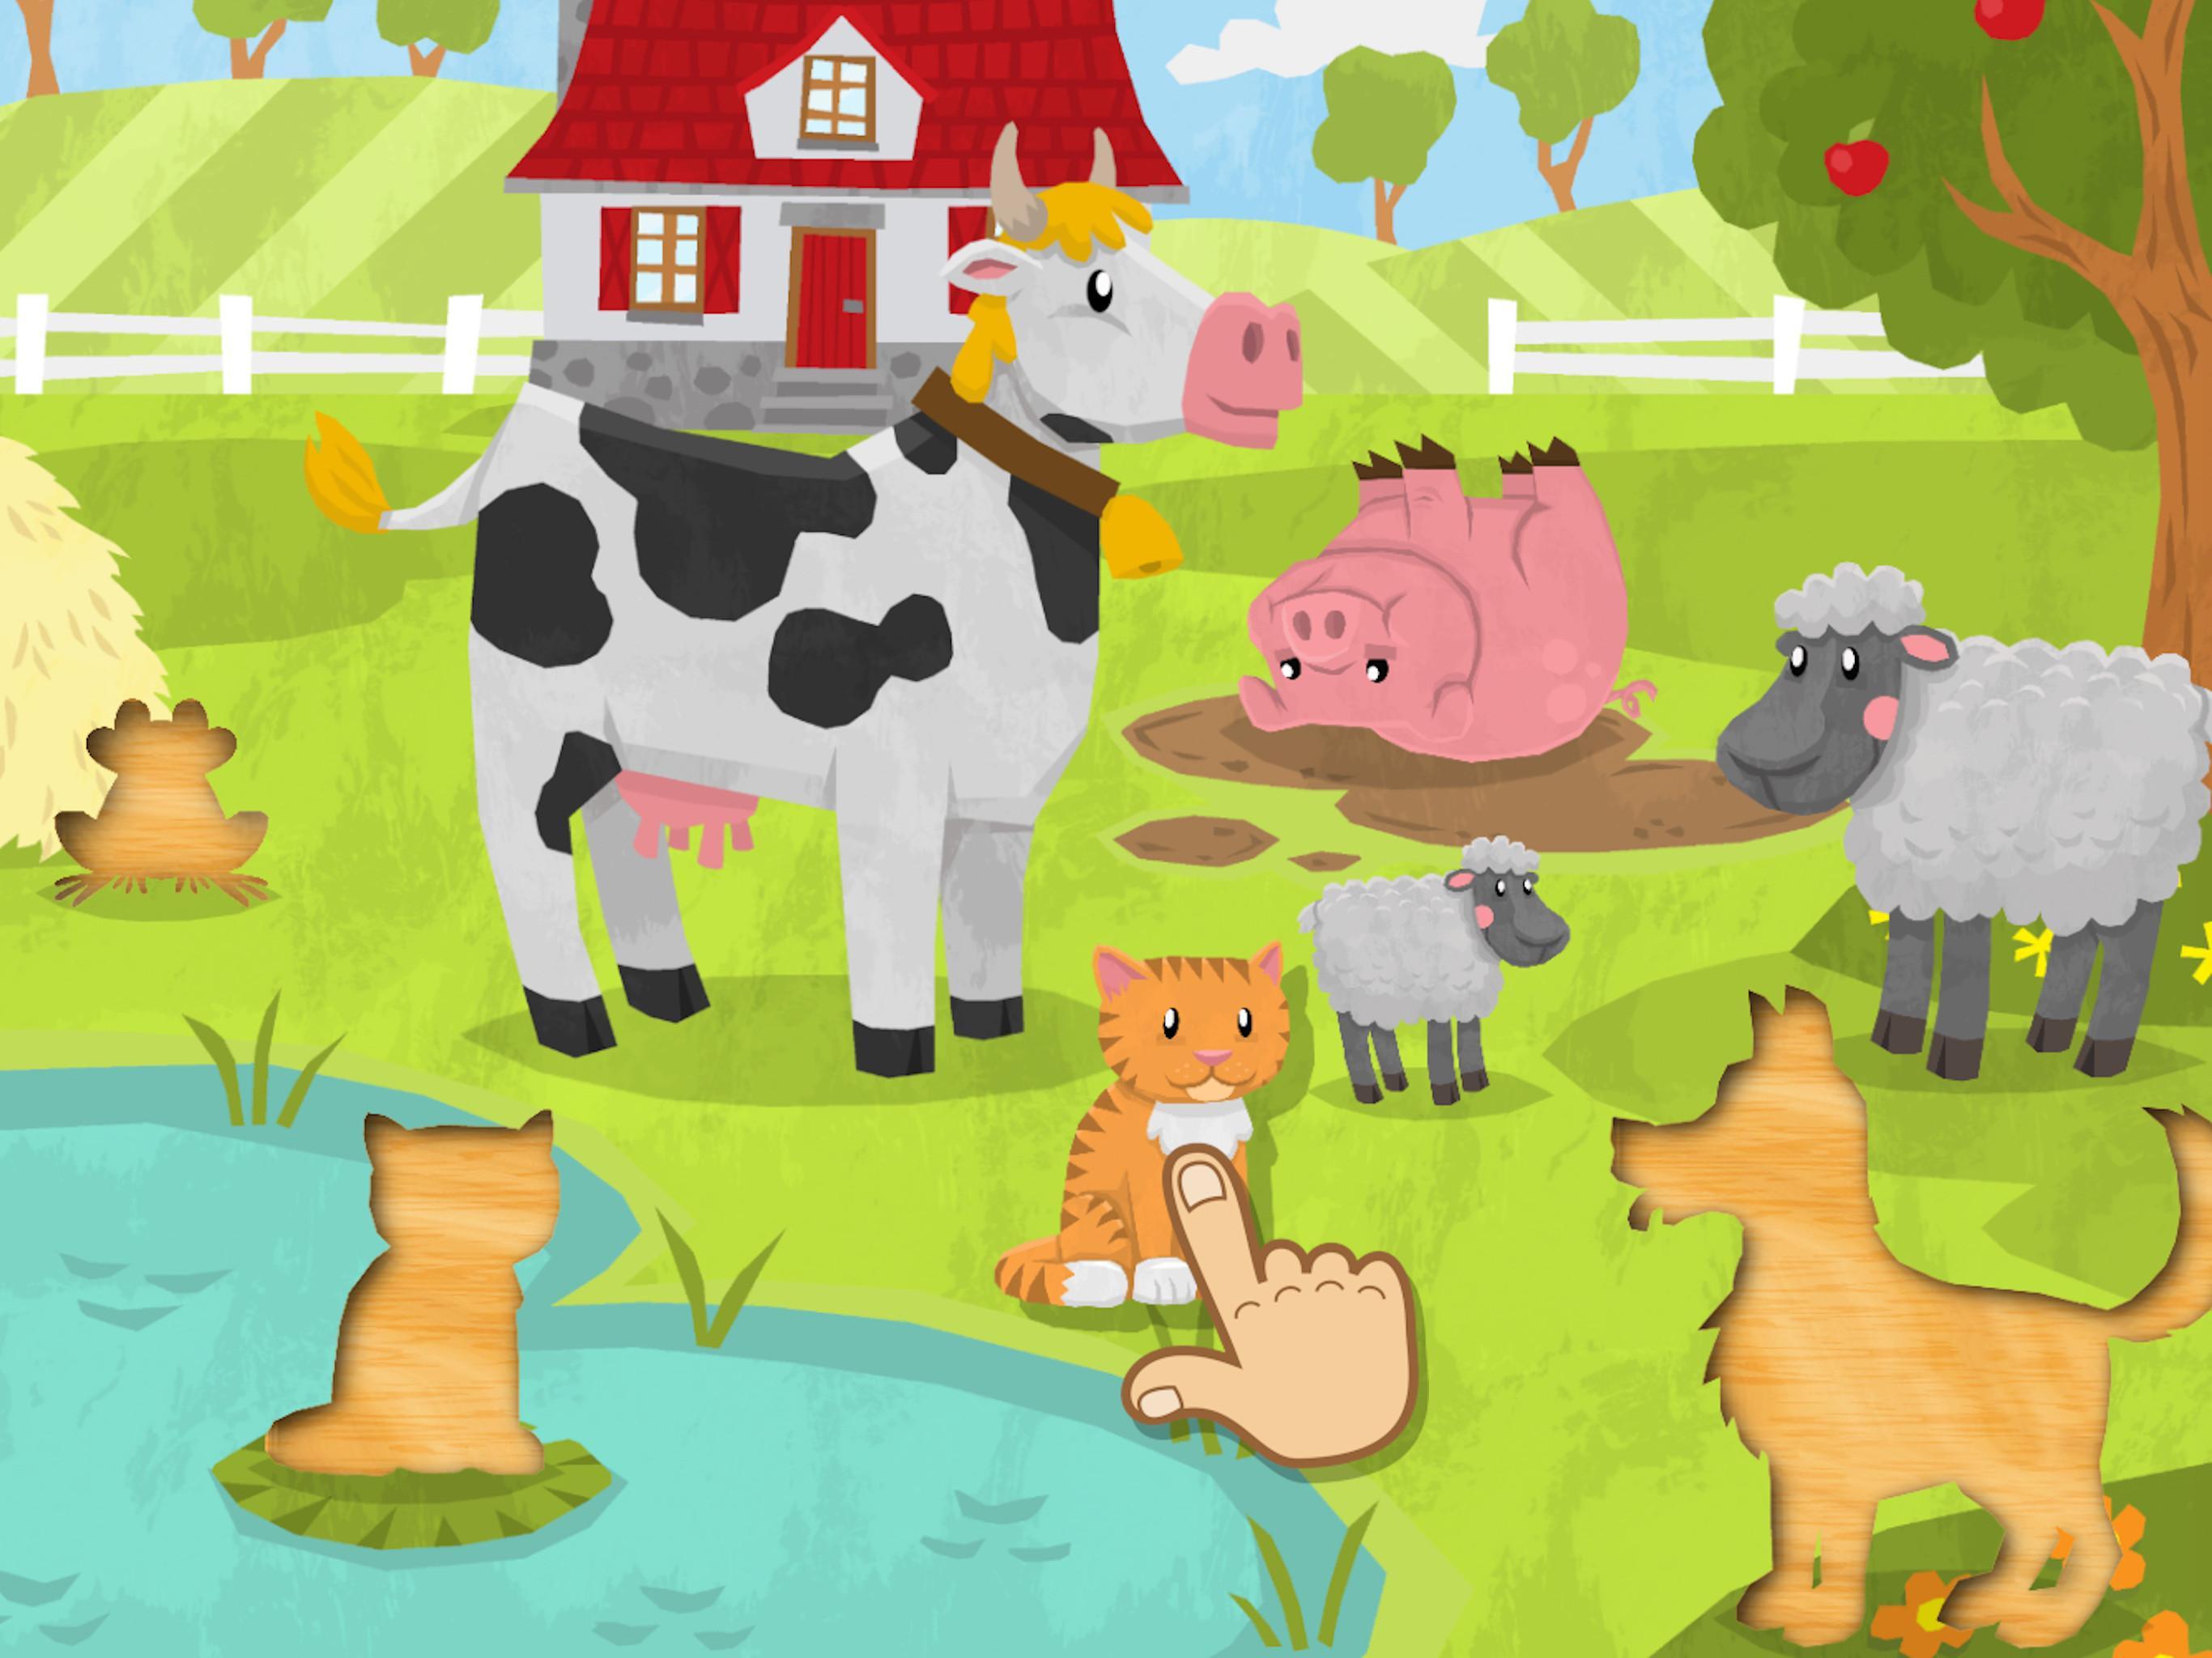 Обновление игры пазл. Puzzle animals for Kids приложение игра. Домашние животные пазл 1-2. Cute Puzzles for Kids игра. Puzzle animals for Kids APK game for Android.